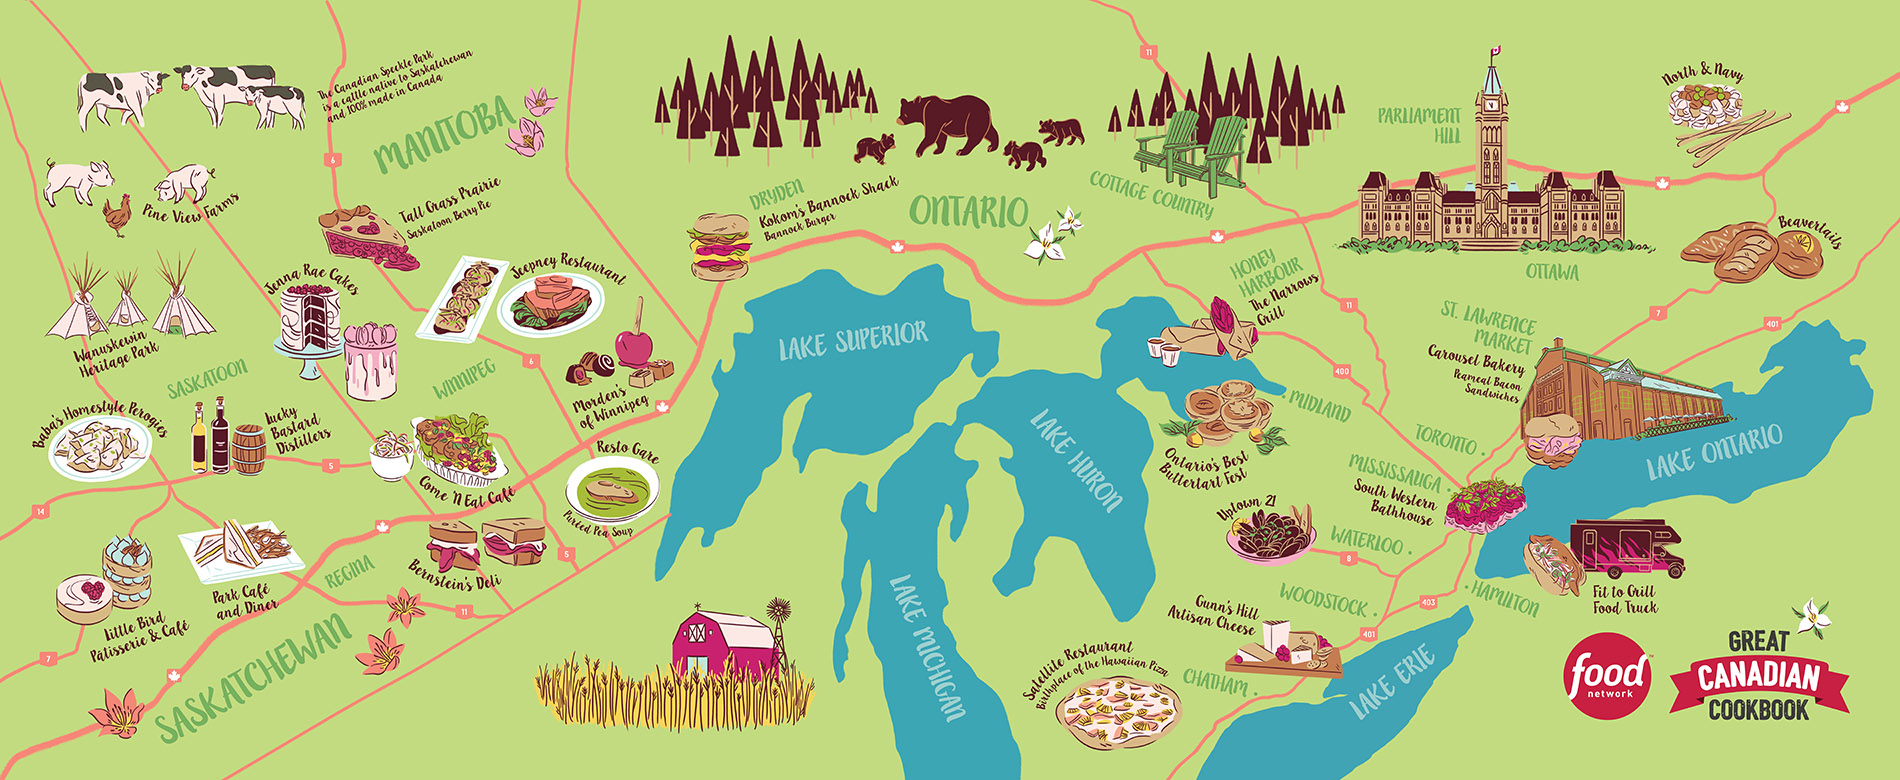 Great Canadian Cookbook - Prairies & Ontario